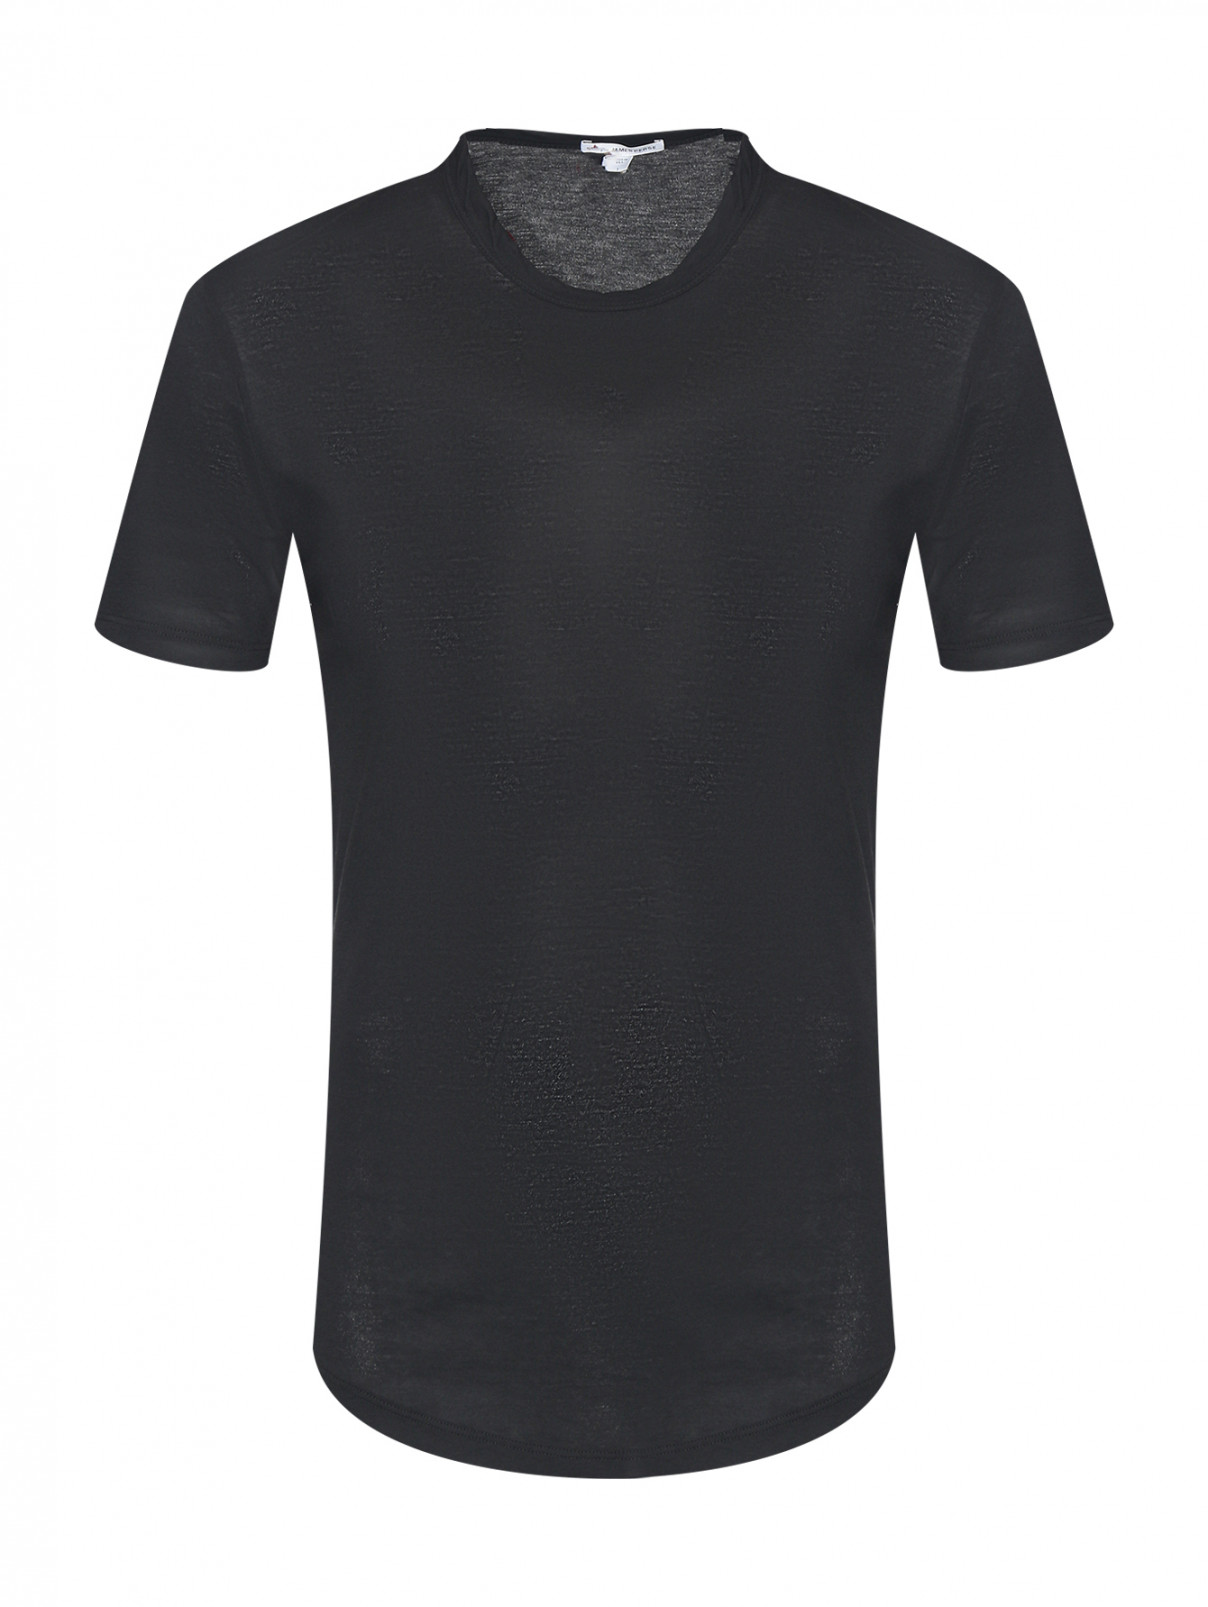 Базовая футболка из хлопка James Perse  –  Общий вид  – Цвет:  Черный